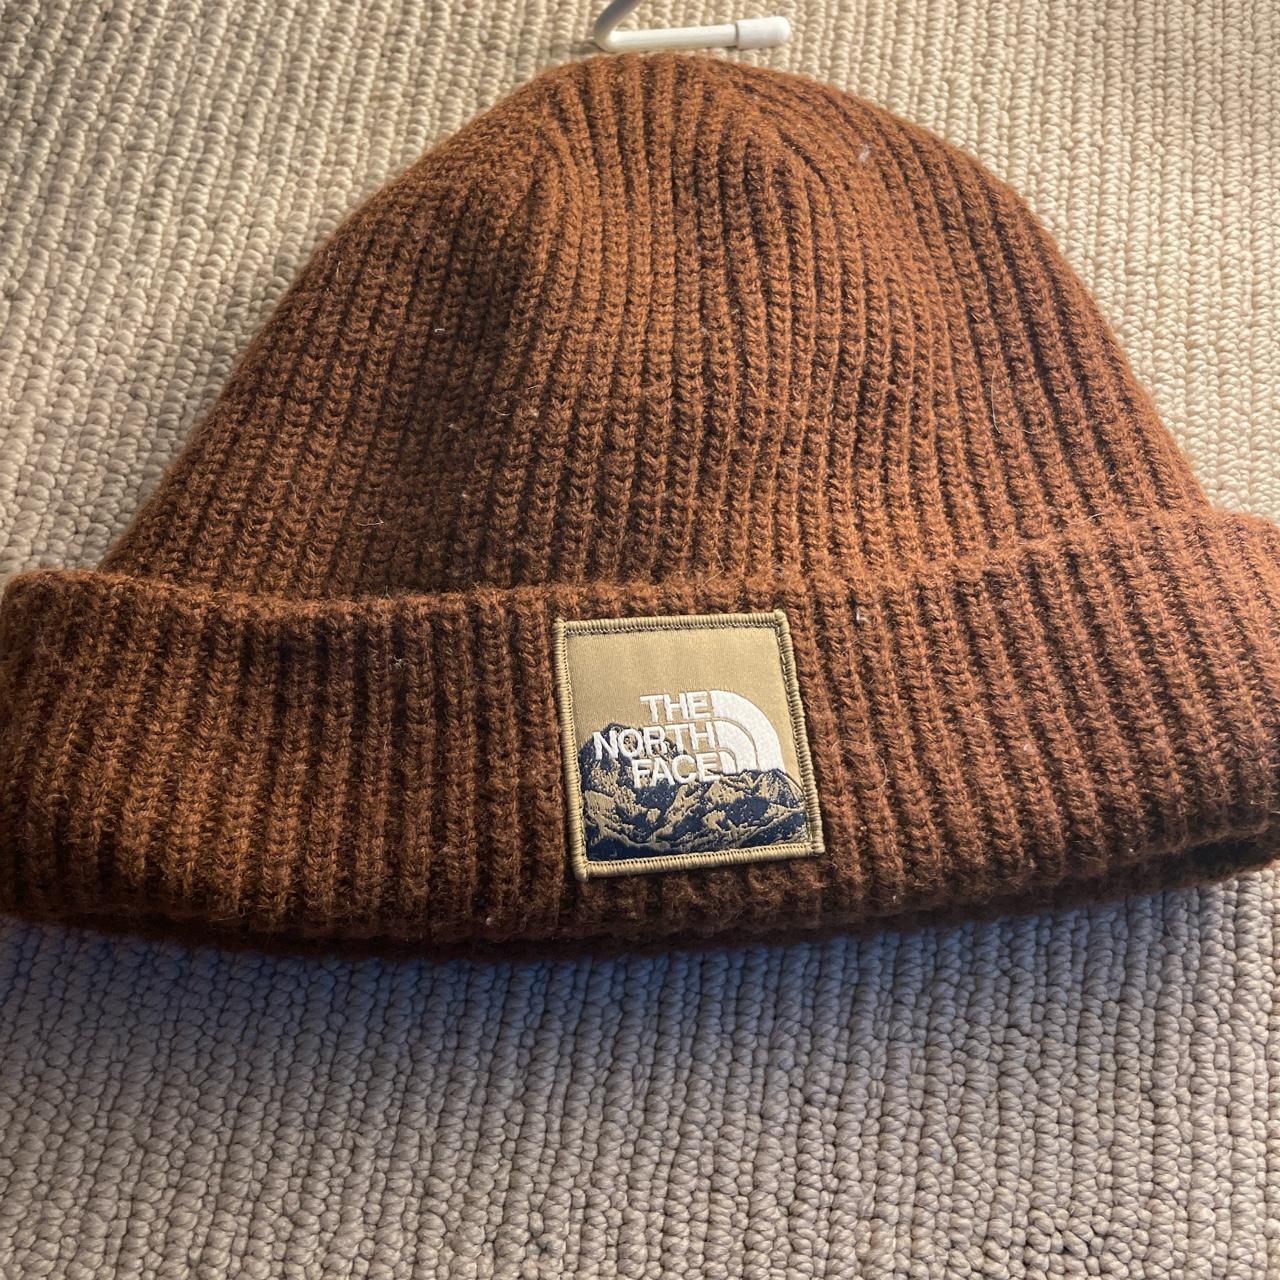 The North Face Men's Brown Hat | Depop